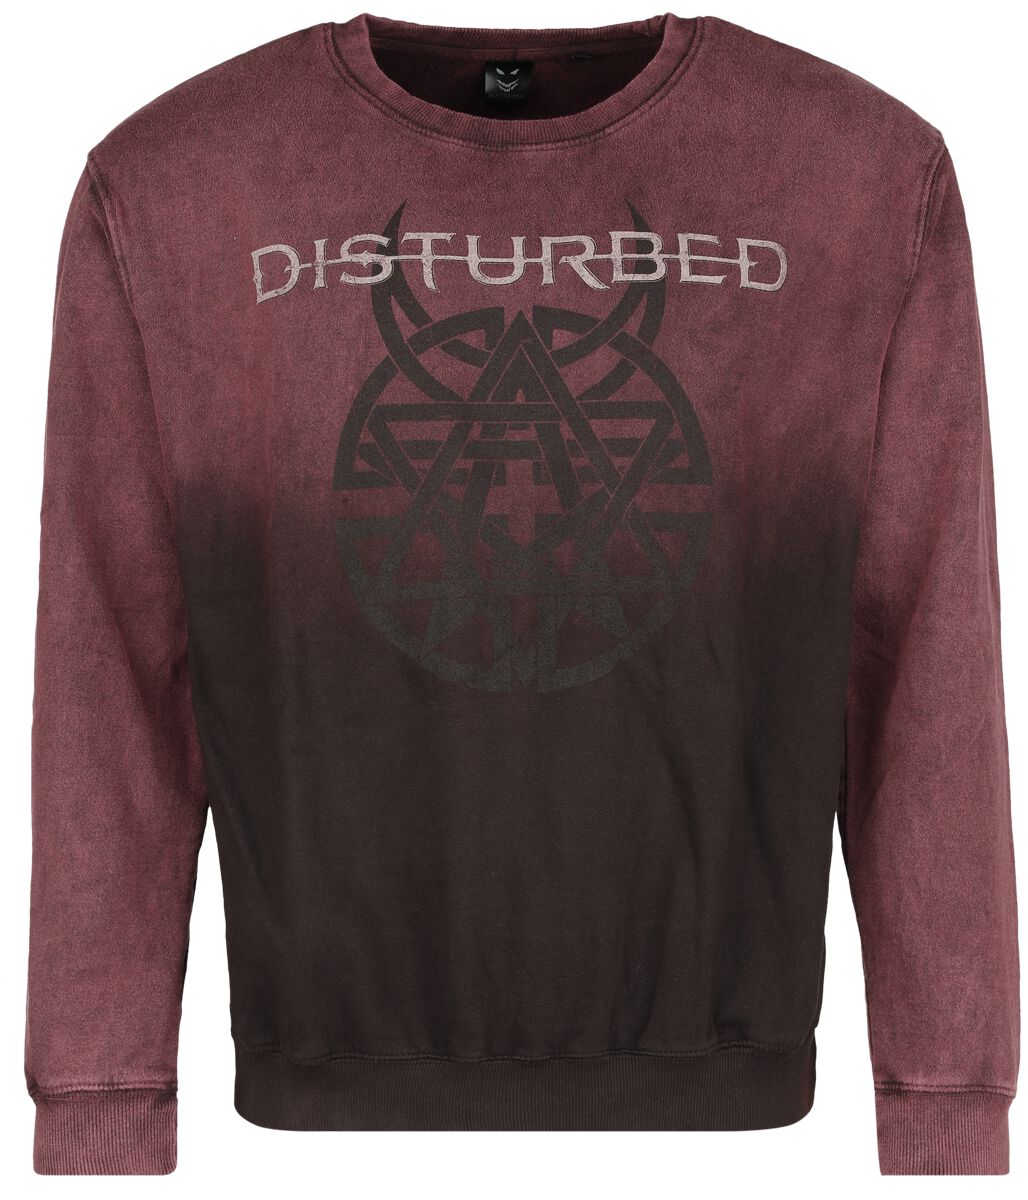 Disturbed Sweatshirt - Believe Symbol - S bis XXL - für Männer - Größe L - dunkelrot  - Lizenziertes Merchandise!